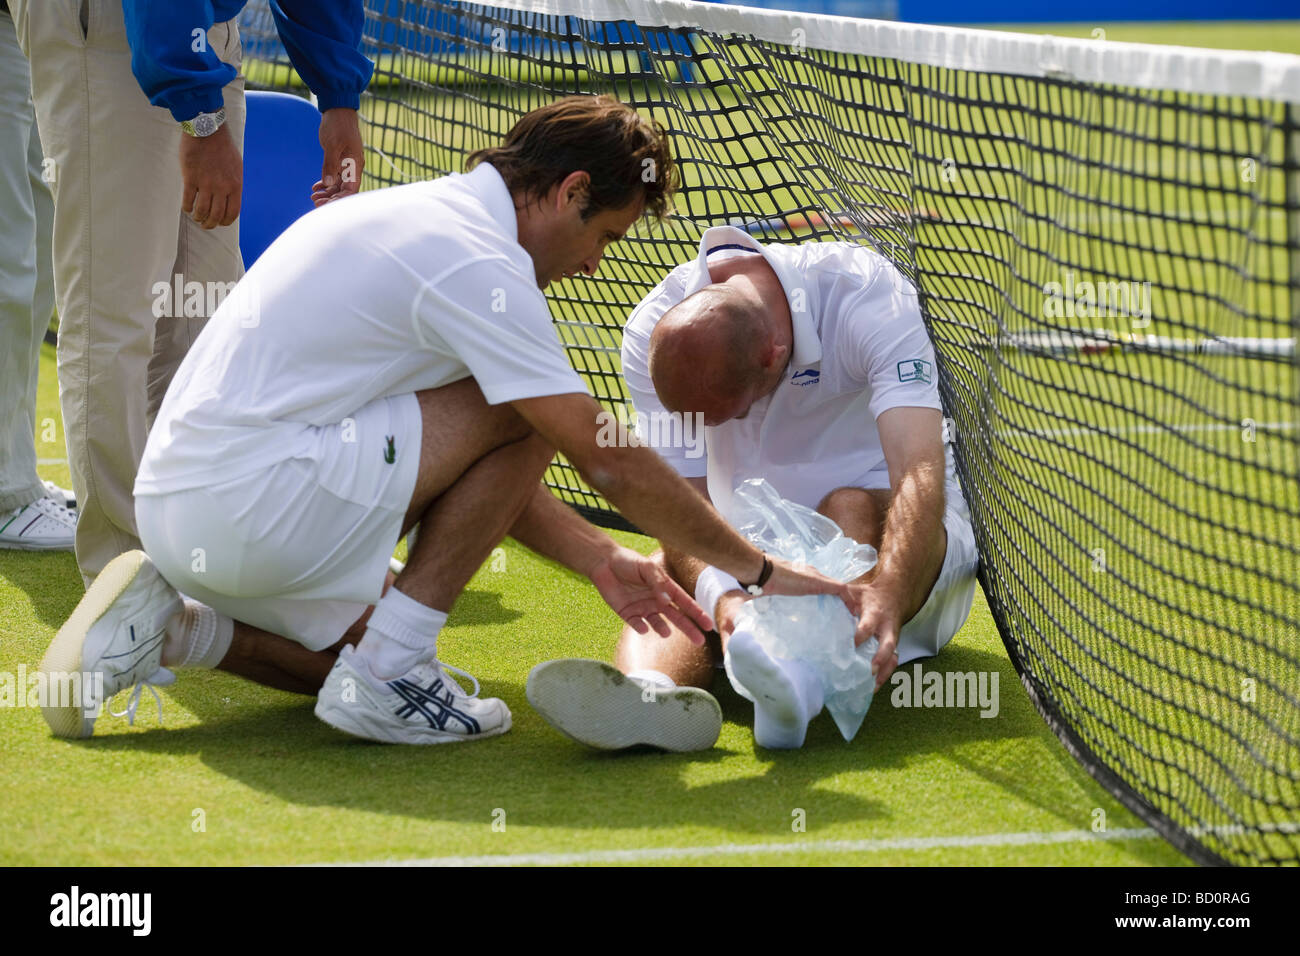 Tournoi de tennis International AEGON Ivan Ljubicic prend une lourde chute. Banque D'Images